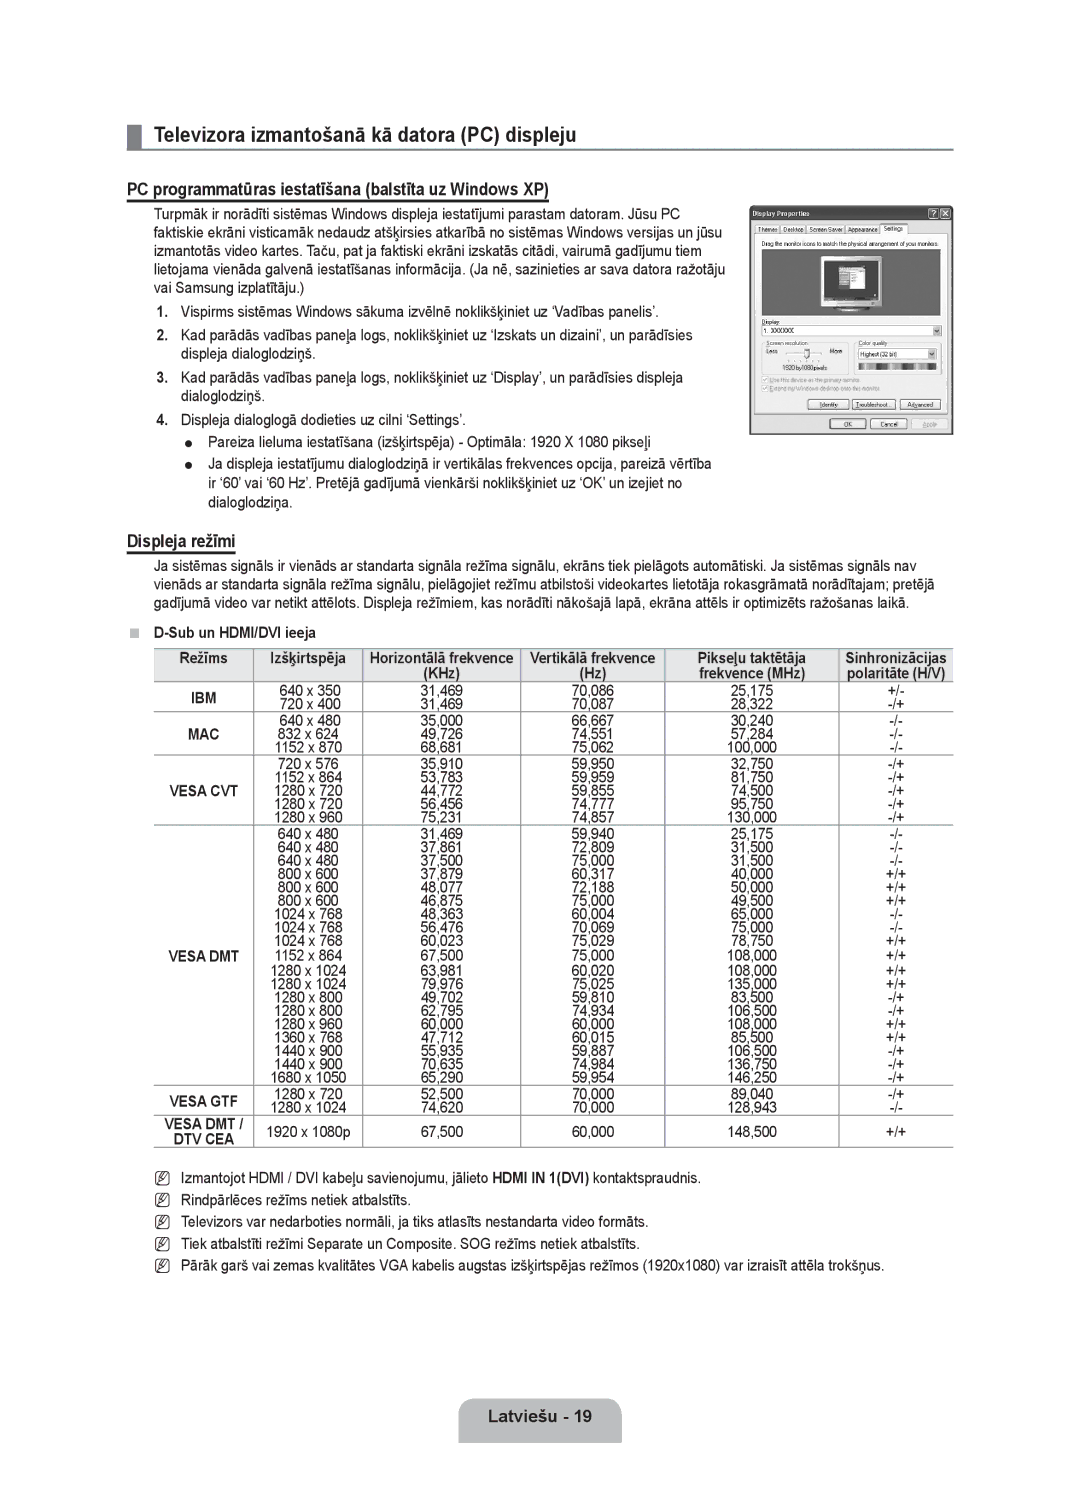 Samsung UE40B6000VWXXC Televizora izmantošanā kā datora PC displeju, PC programmatūras iestatīšana balstīta uz Windows XP 